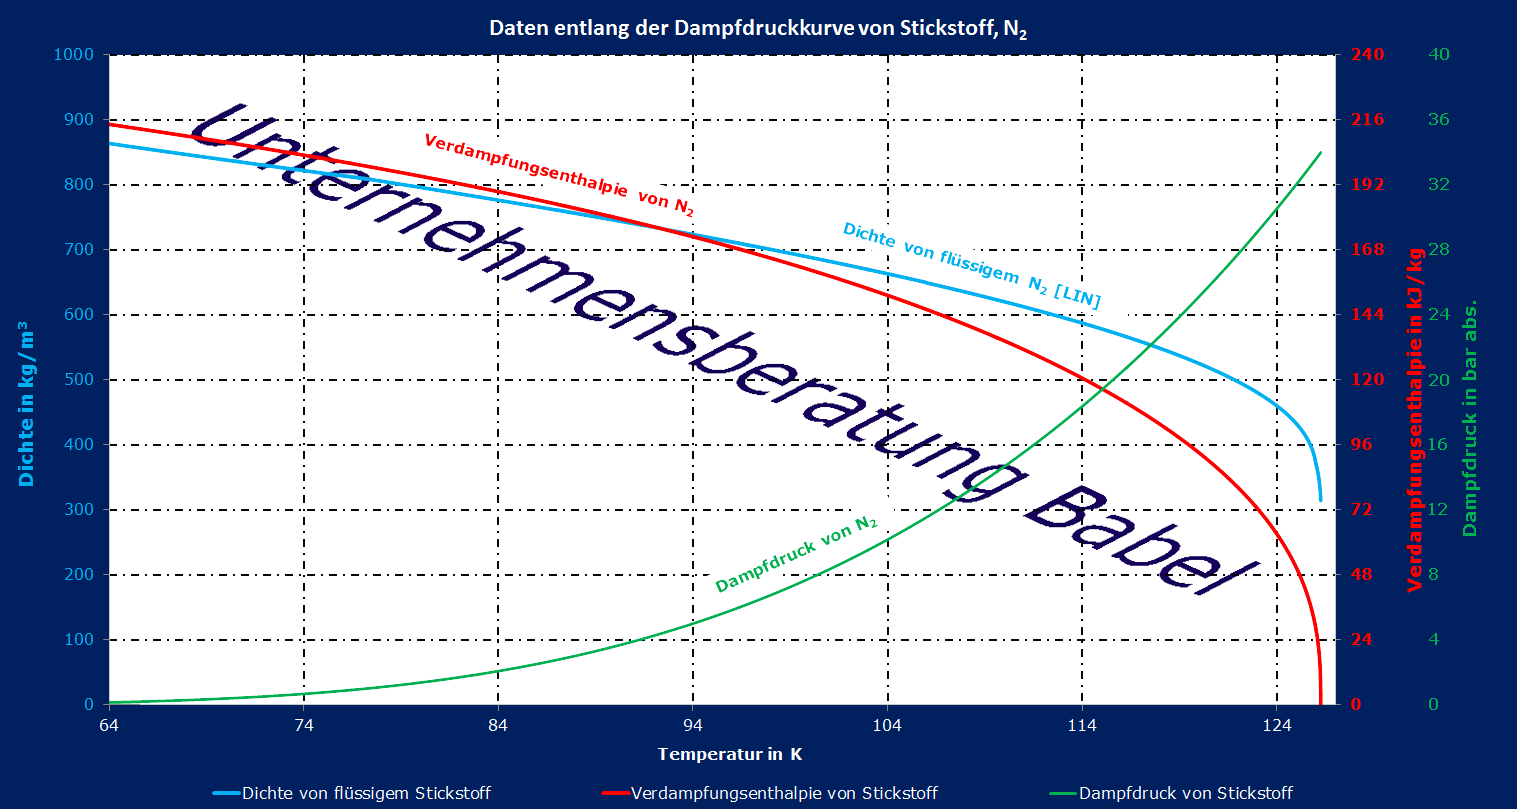 Daten entlang der Dampfdruckkurve für Stickstoff (Dampfdruck Stickstoff, Dichte Stickstoff, Verdampfungsenthalpie Stickstoff)